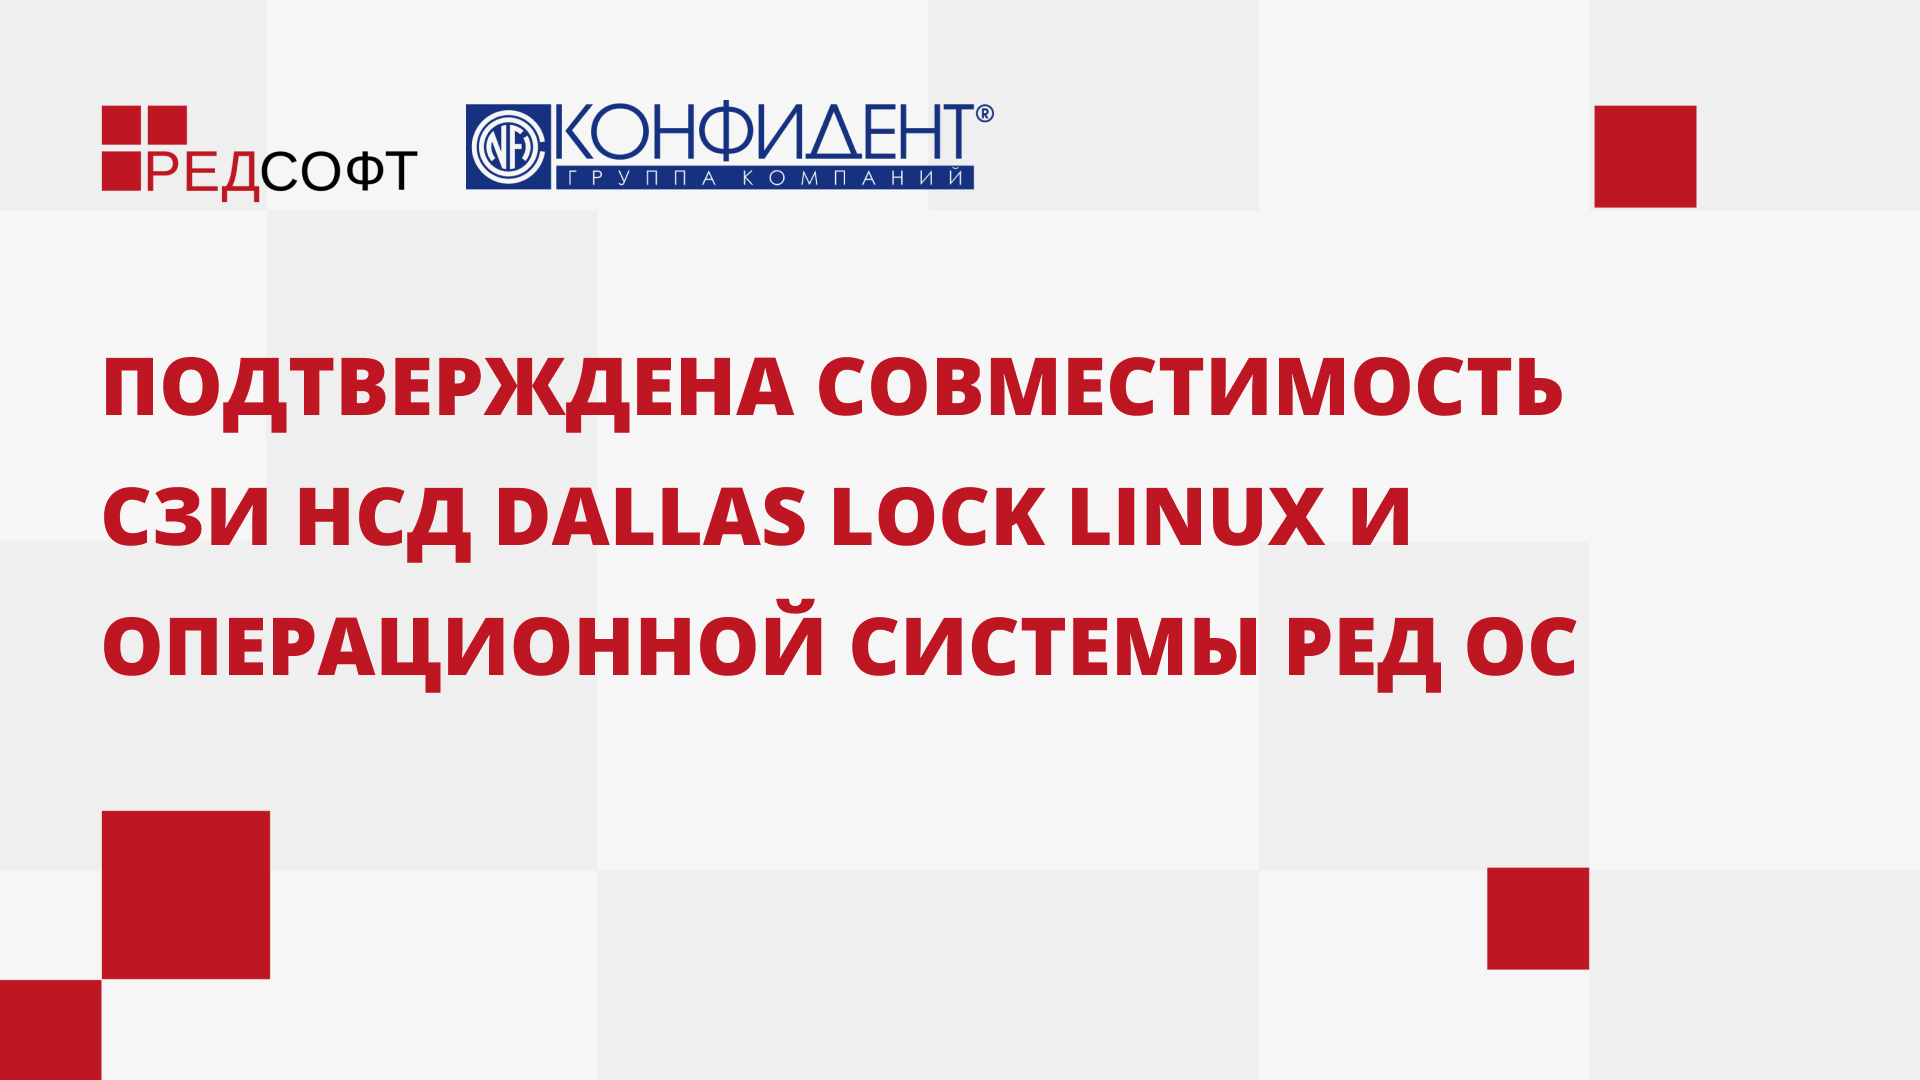 Подтверждена совместимость СЗИ НСД Dallas Lock Linux и операционной системы РЕД ОС